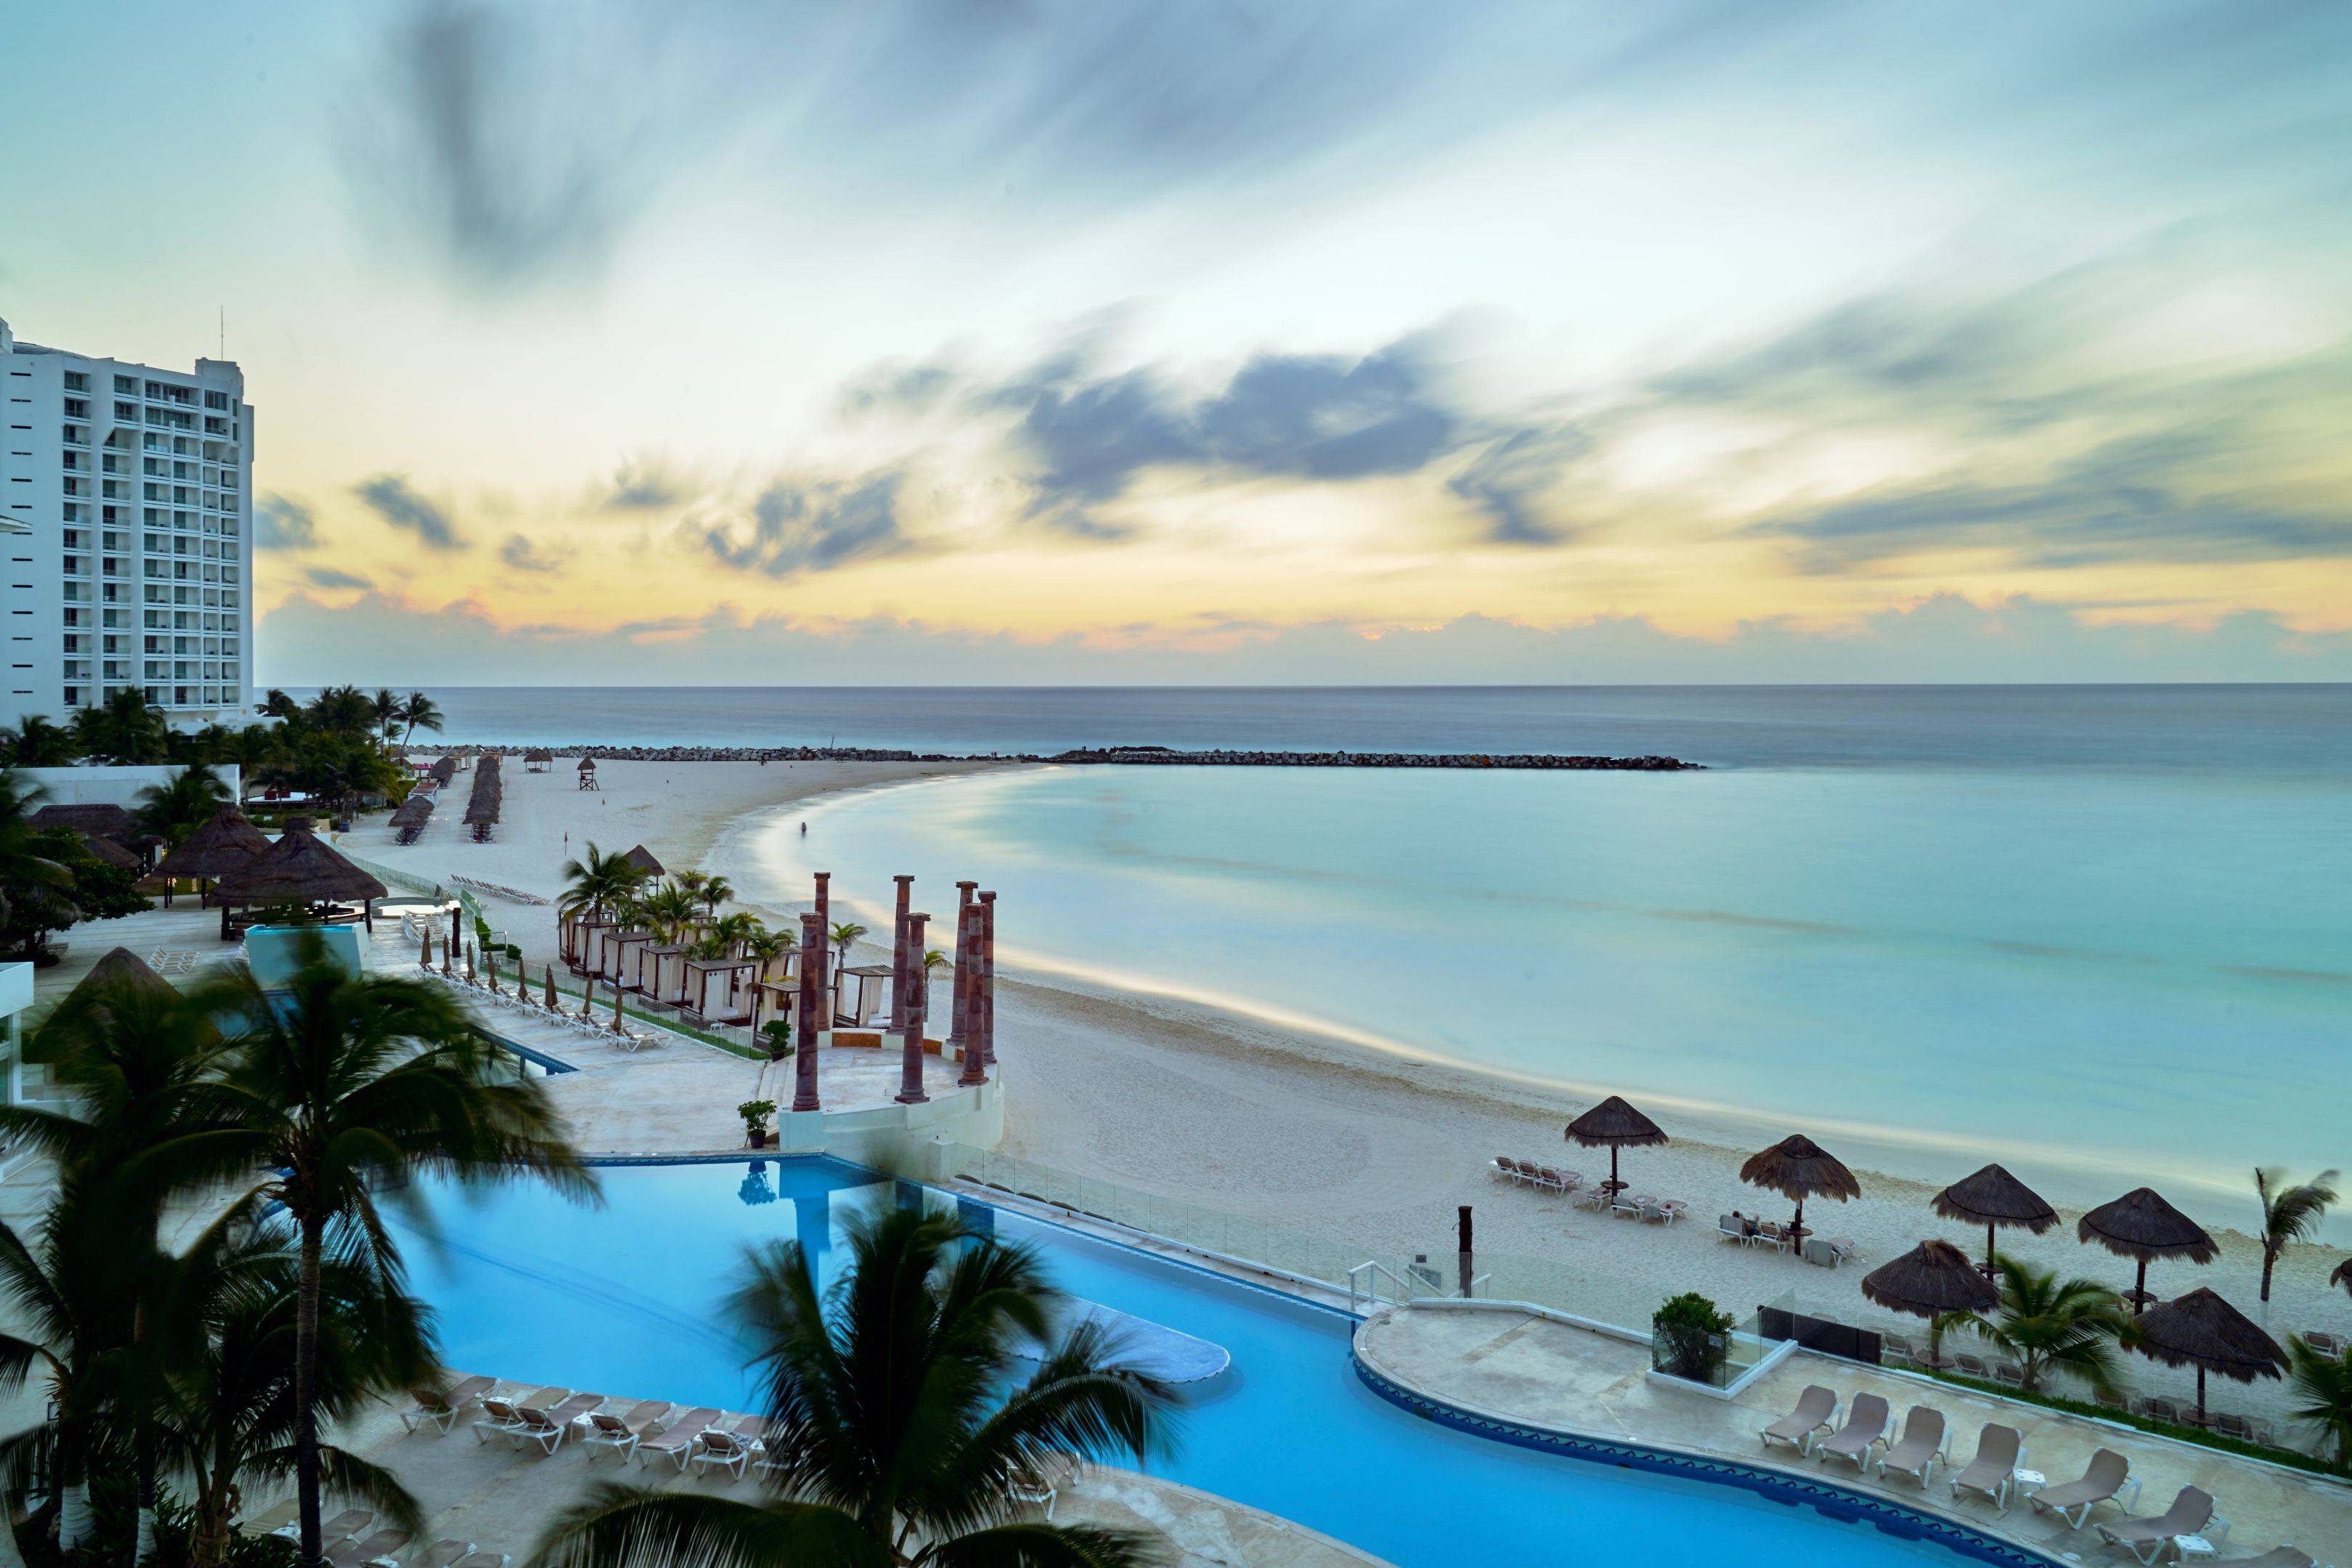 Cancun, benvenuti in Mexico!